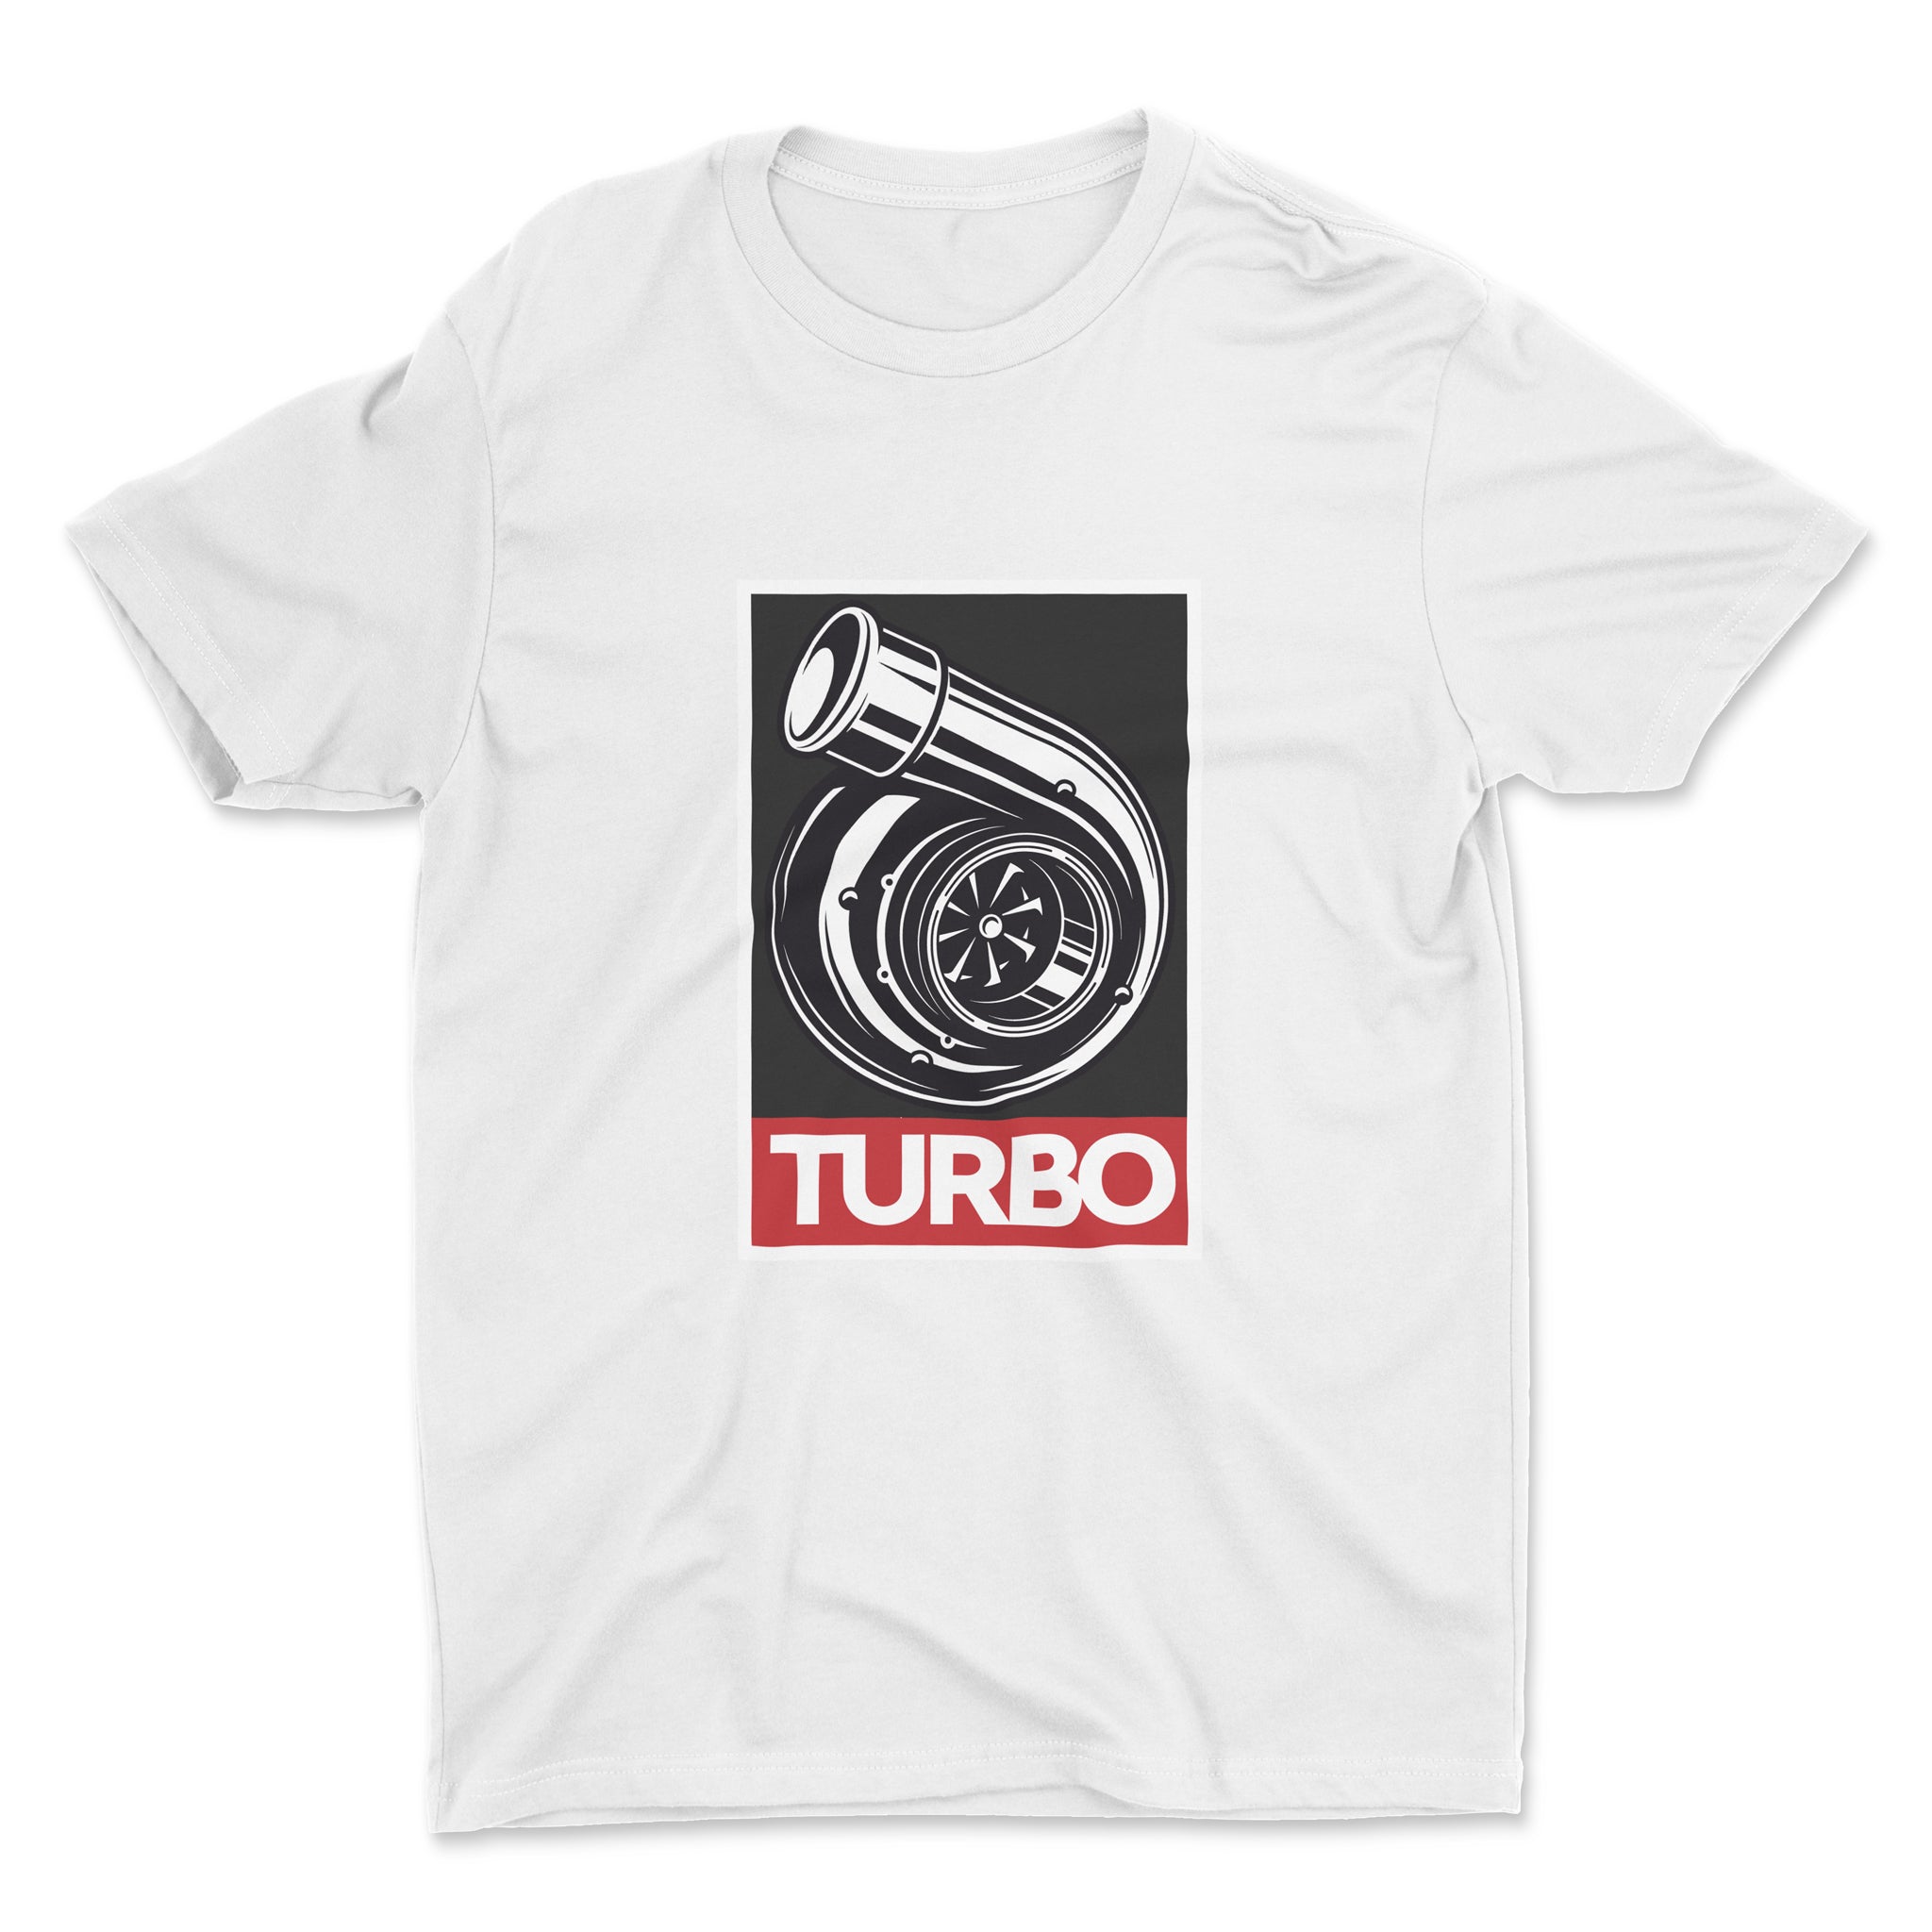 Turbo x Obey - Car T-Shirt - White